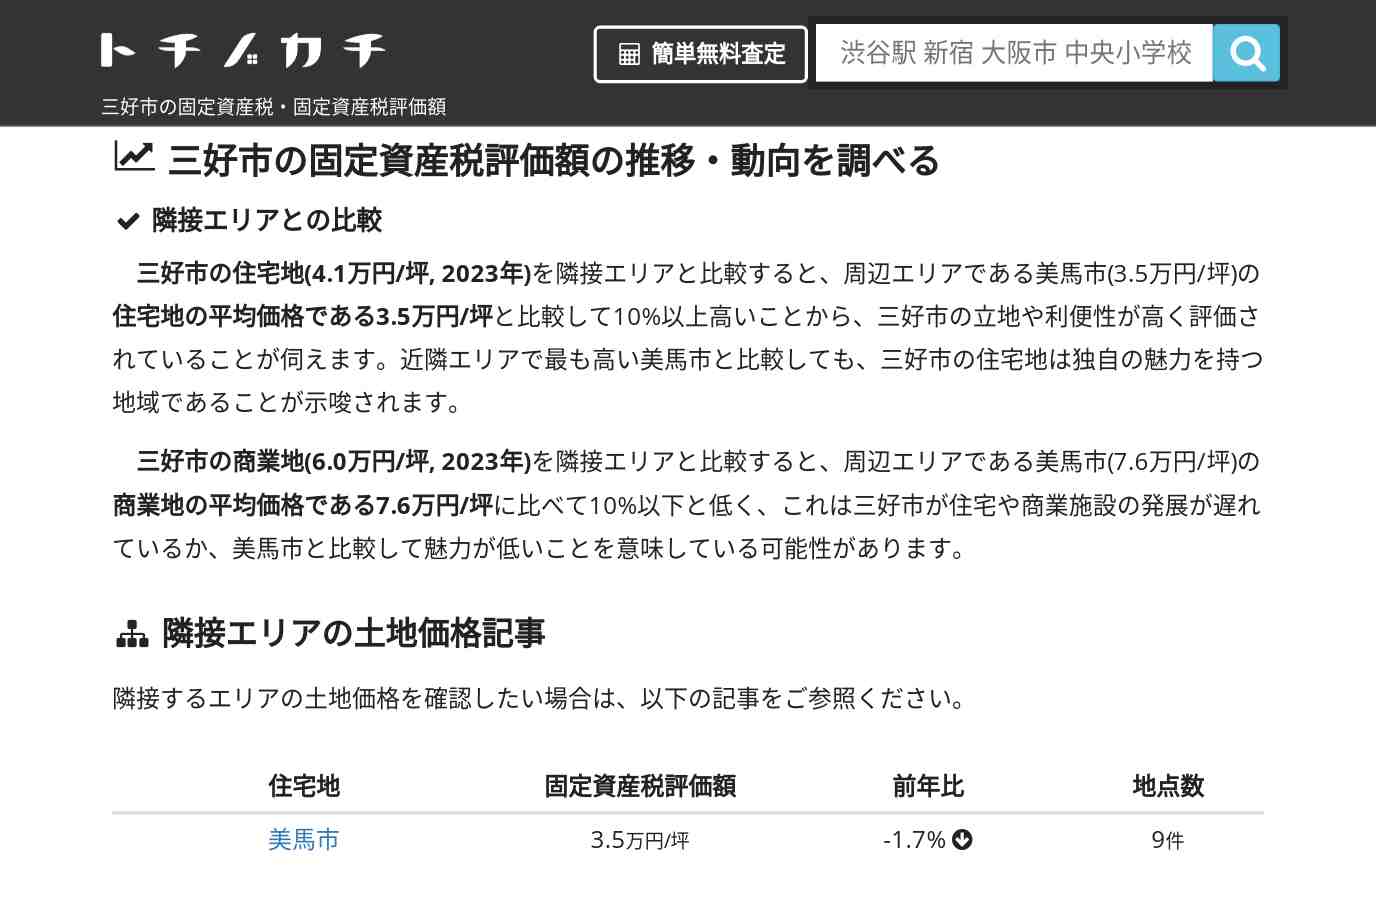 池田小学校(徳島県 三好市)周辺の固定資産税・固定資産税評価額 | トチノカチ